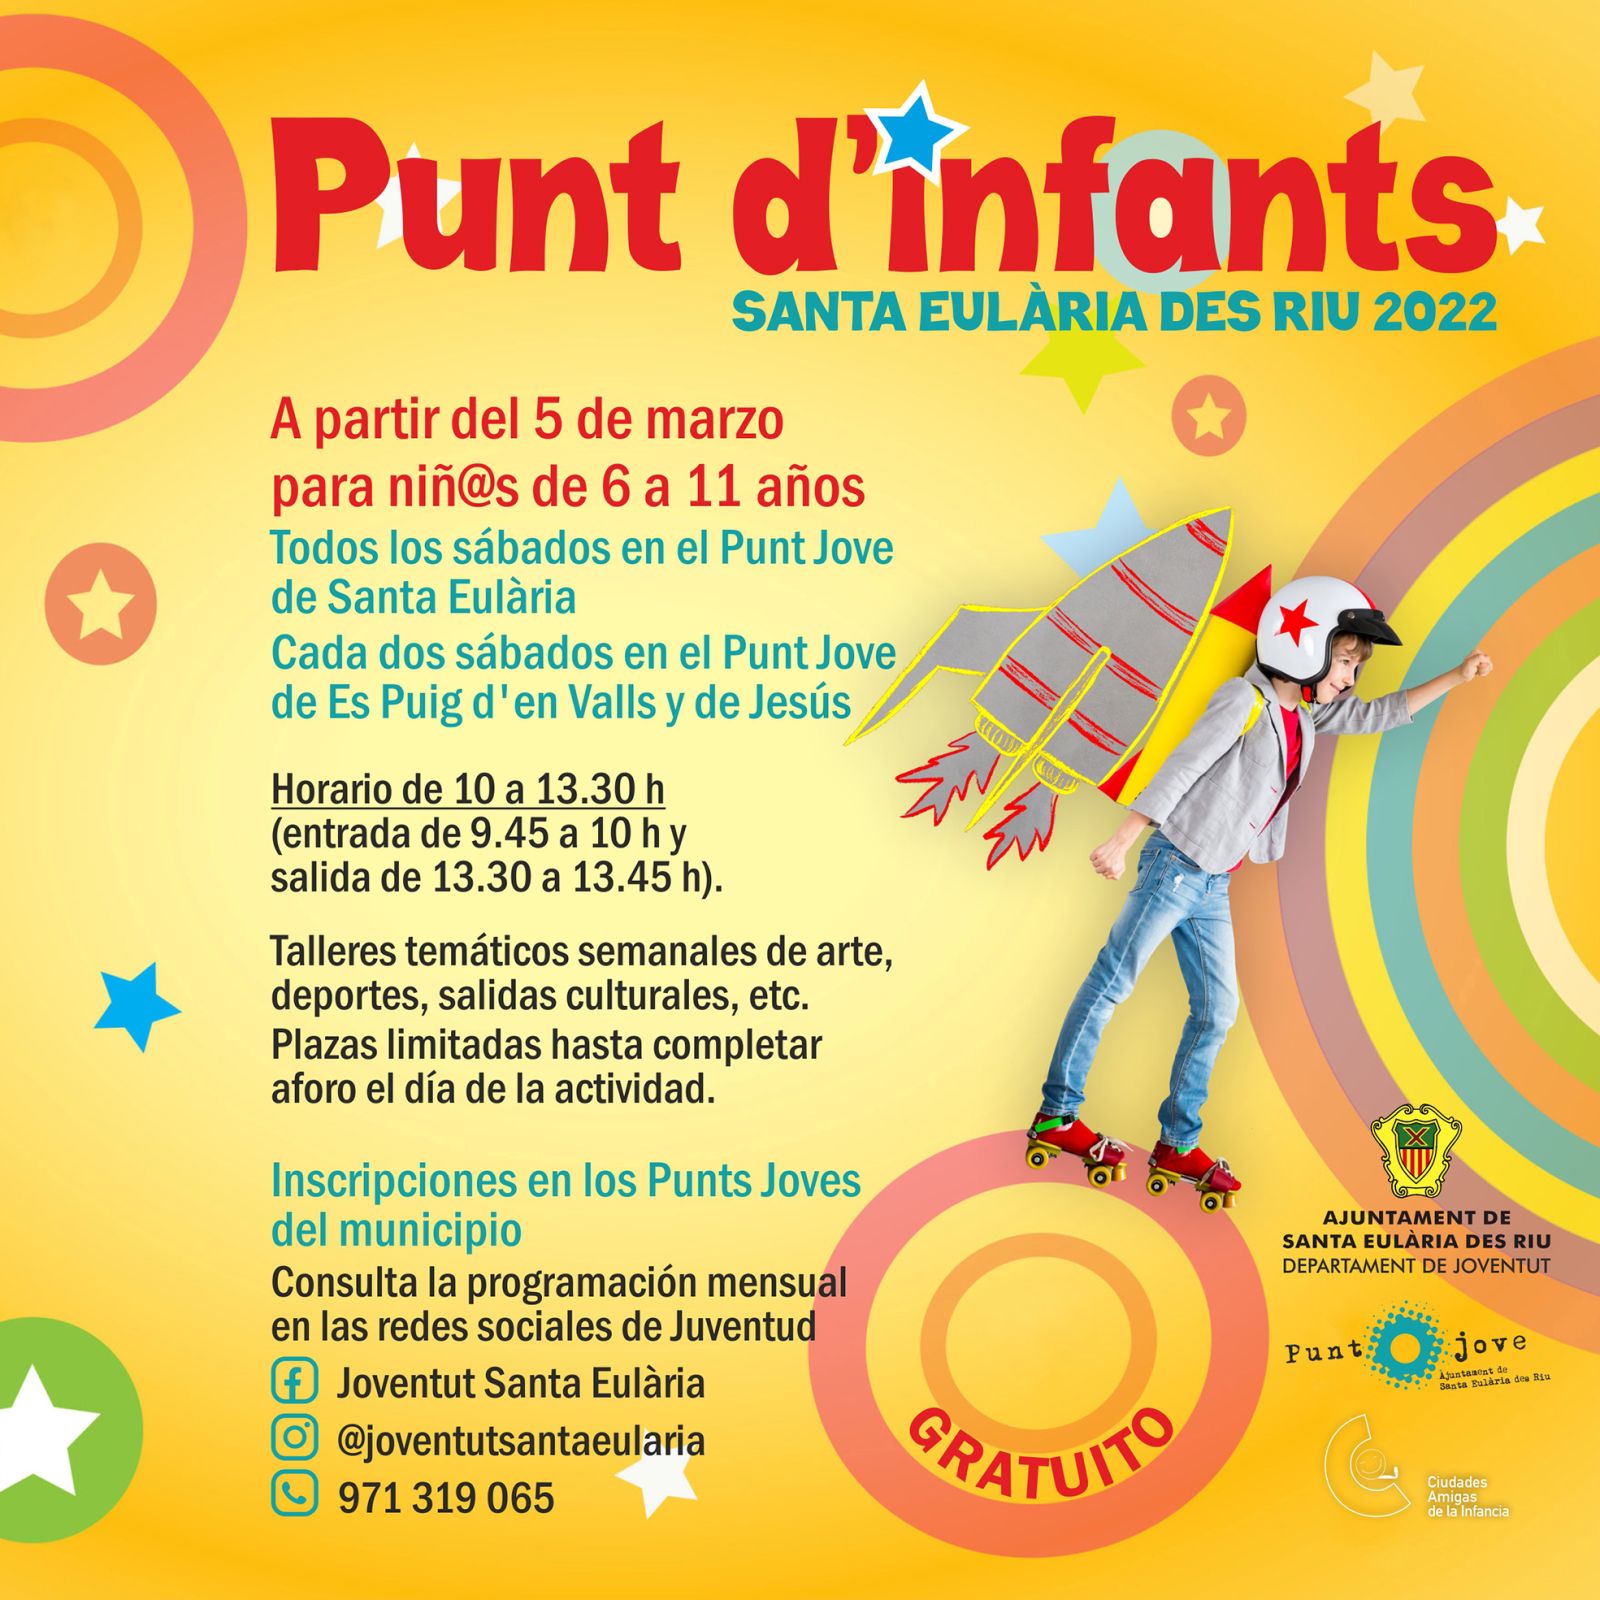 Santa Eulària des Riu crea los Punt d’Infants para ofrecer talleres lúdicos y educativos todos los sábados por la mañana